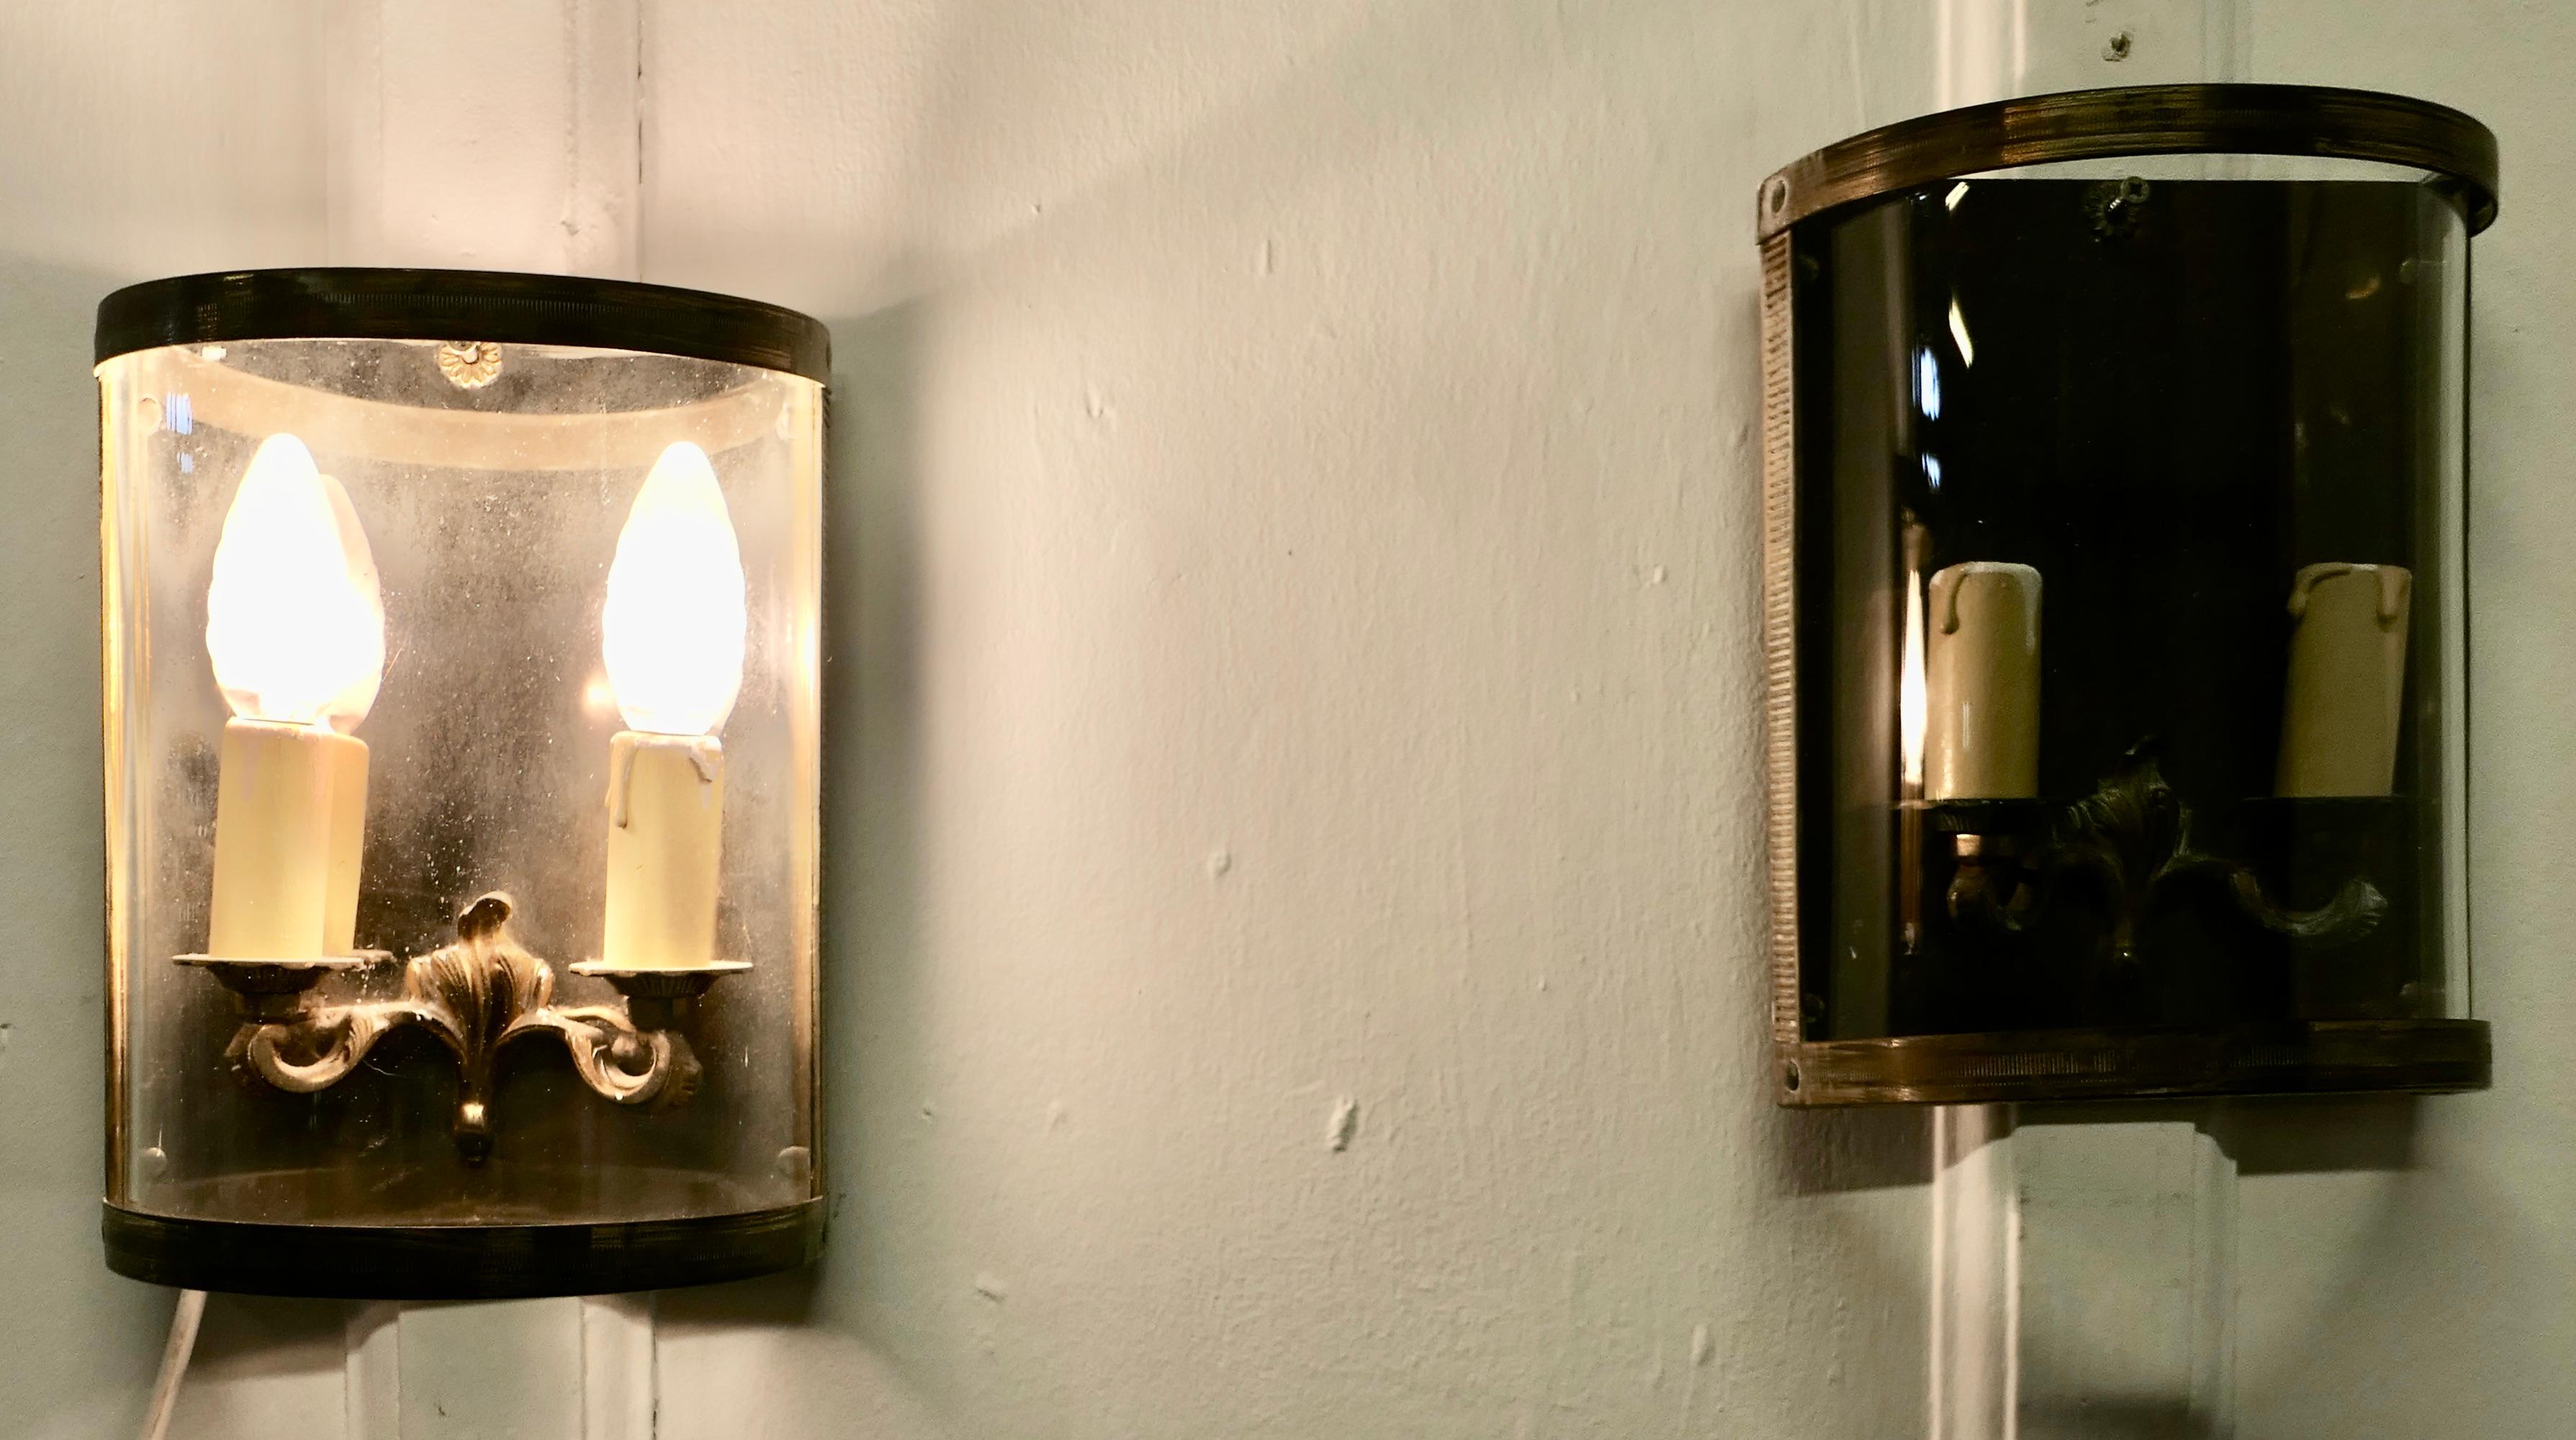 Ein Paar französischer konvexer Wandlaternen mit zwei Leuchten aus Messing

Ein schönes Paar, diese Lichter halten 2 Glühbirnen jedes geben ein helles Licht auf Veranda oder Eingang Flur, sie haben eine polierte Metallrückwand, um mehr Licht zu